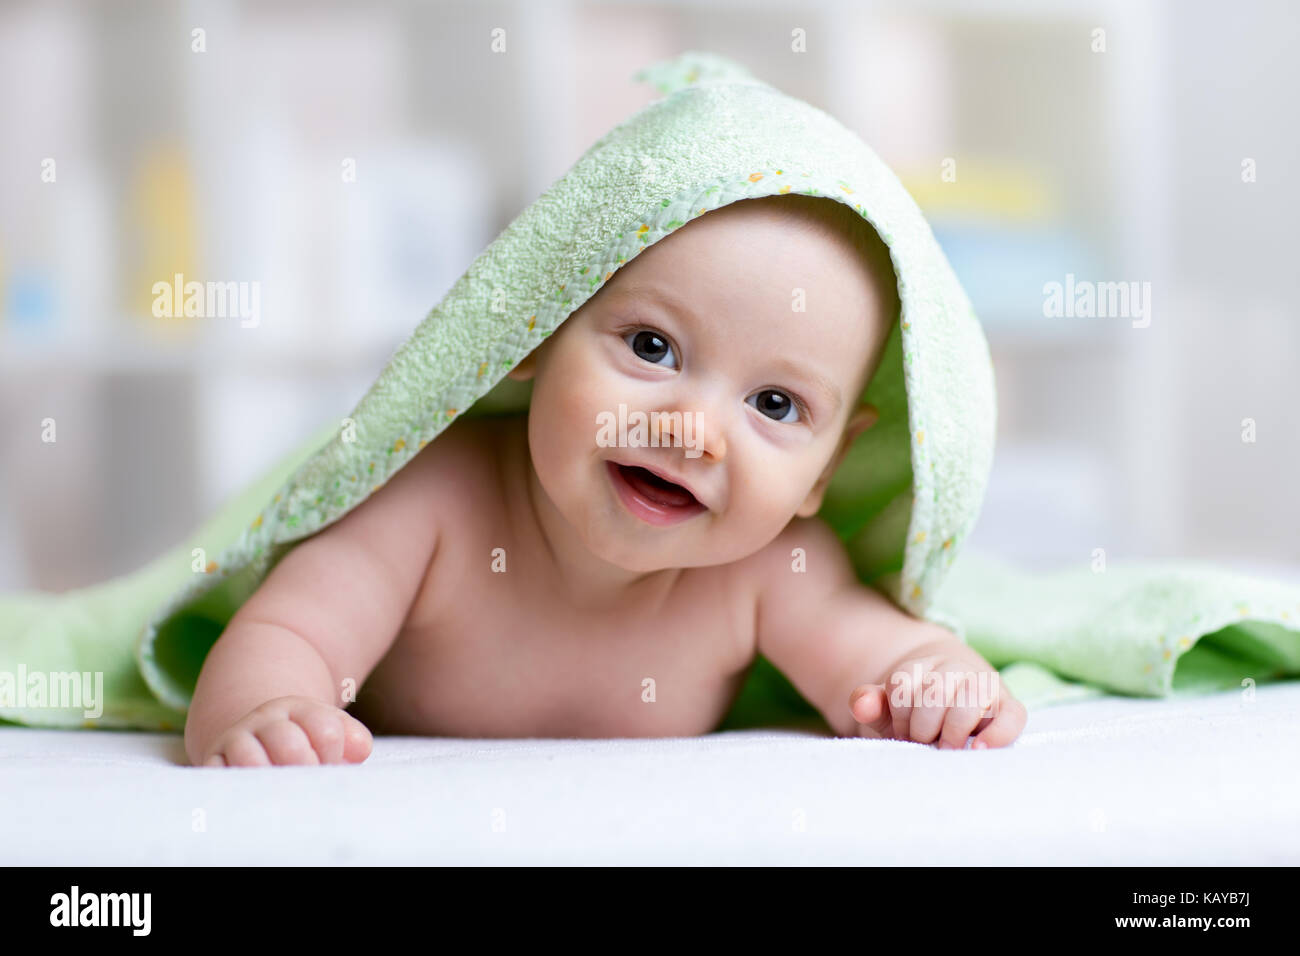 Carino baby in verde dopo la balneazione Foto Stock